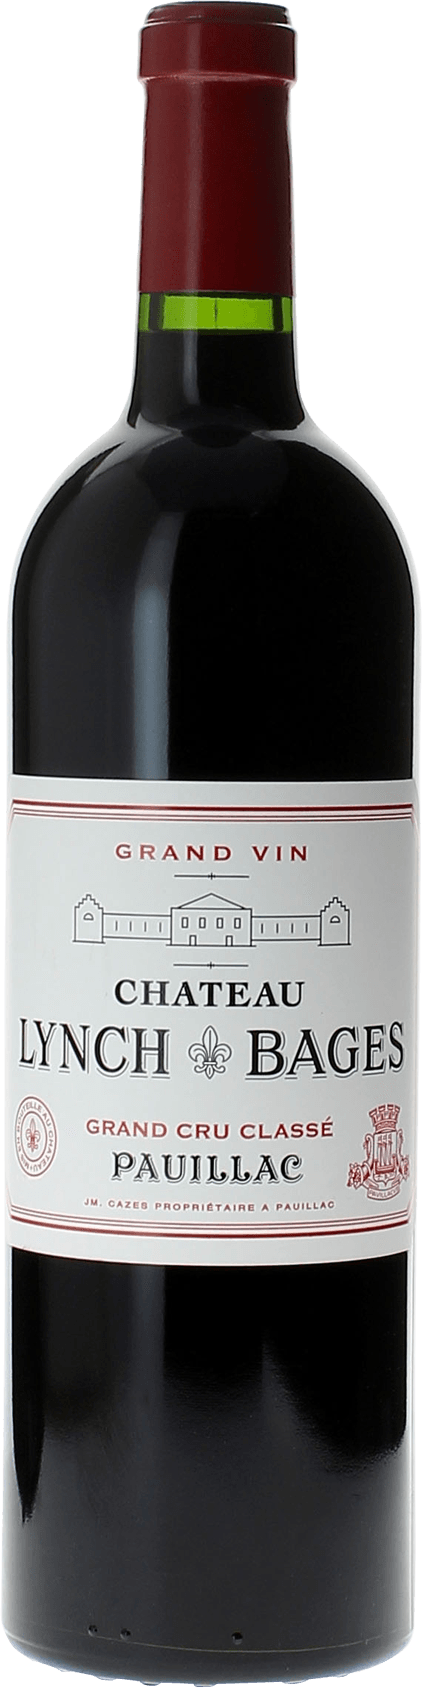 Lynch bages 1974 5 me Grand cru class Pauillac, Bordeaux rouge